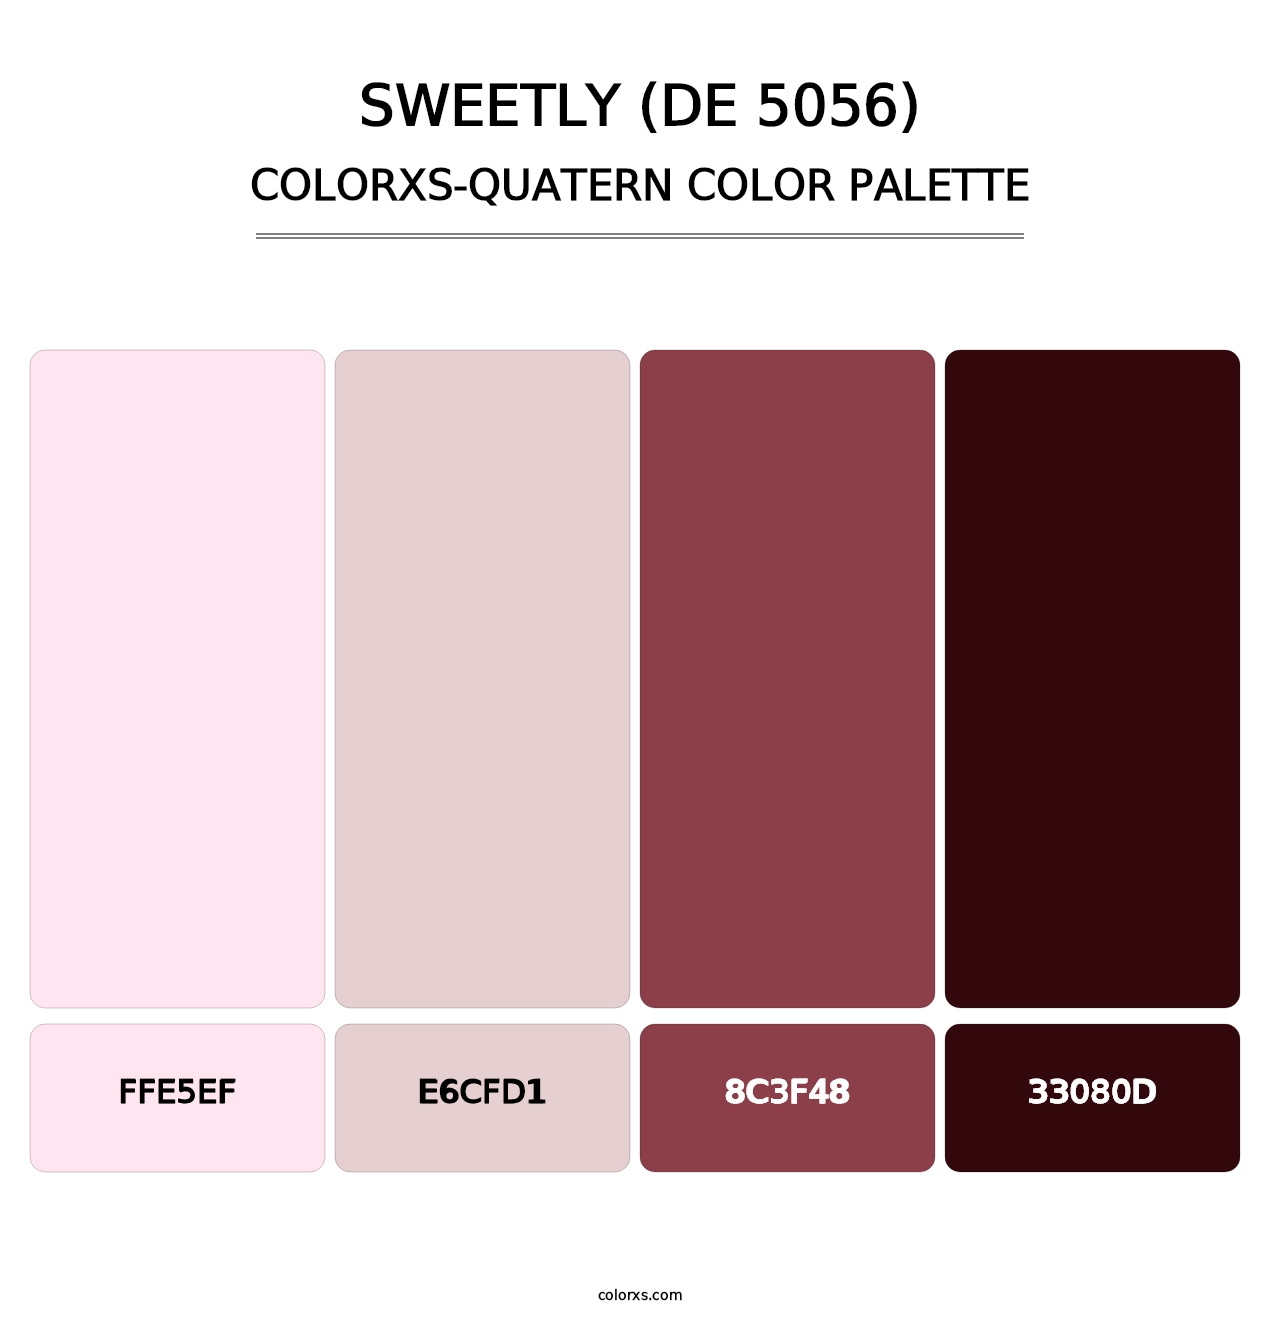 Sweetly (DE 5056) - Colorxs Quatern Palette